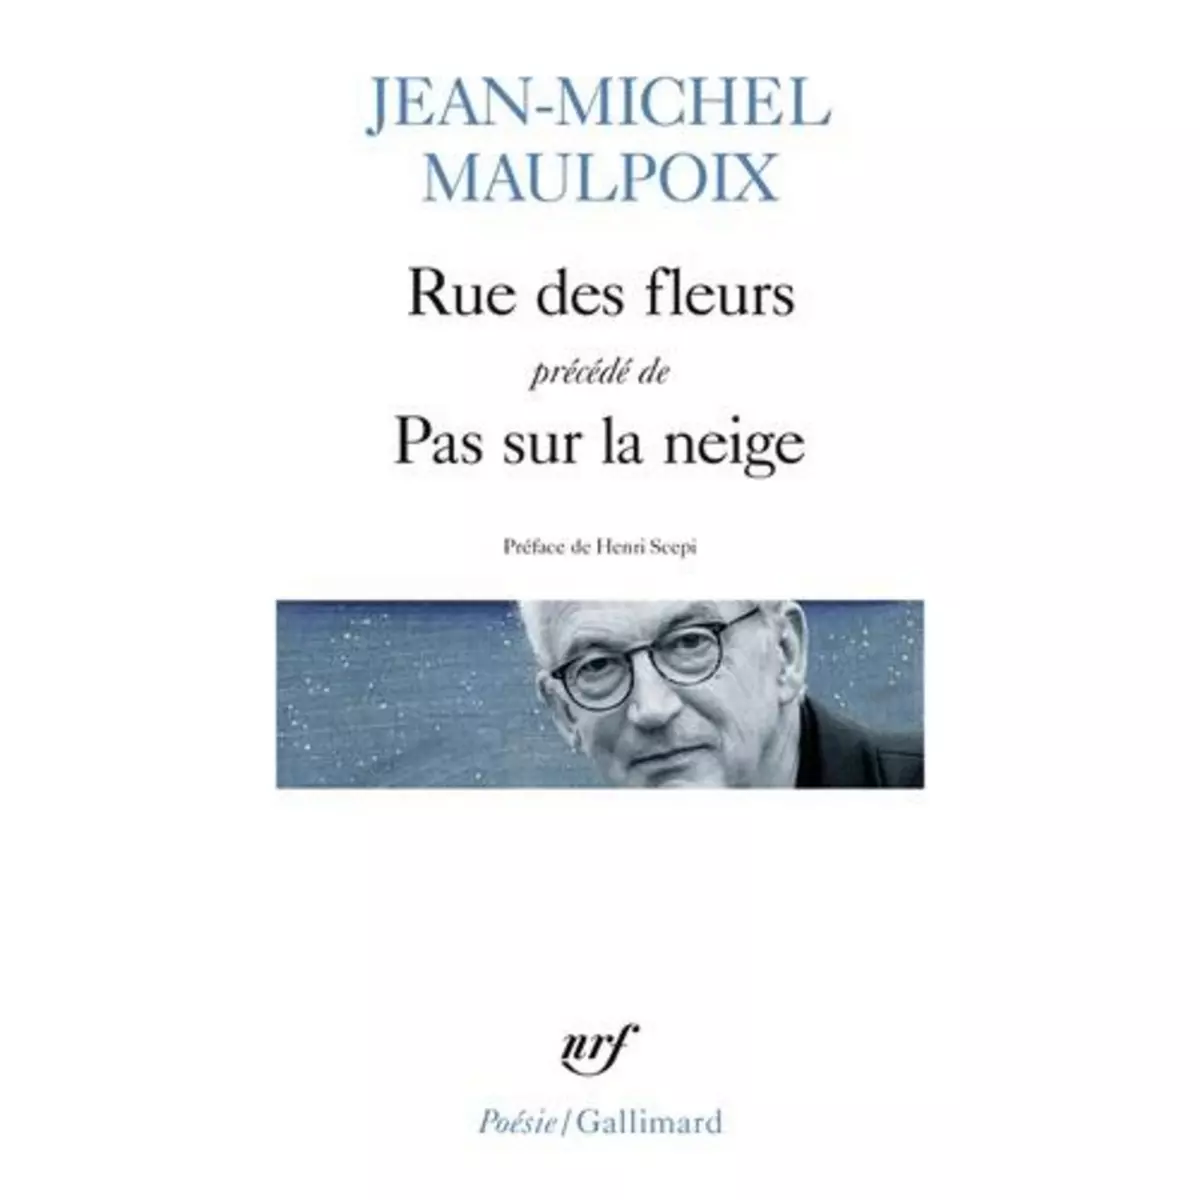  RUE DES FLEURS. PRECEDE DE PAS SUR LA NEIGE, Maulpoix Jean-Michel